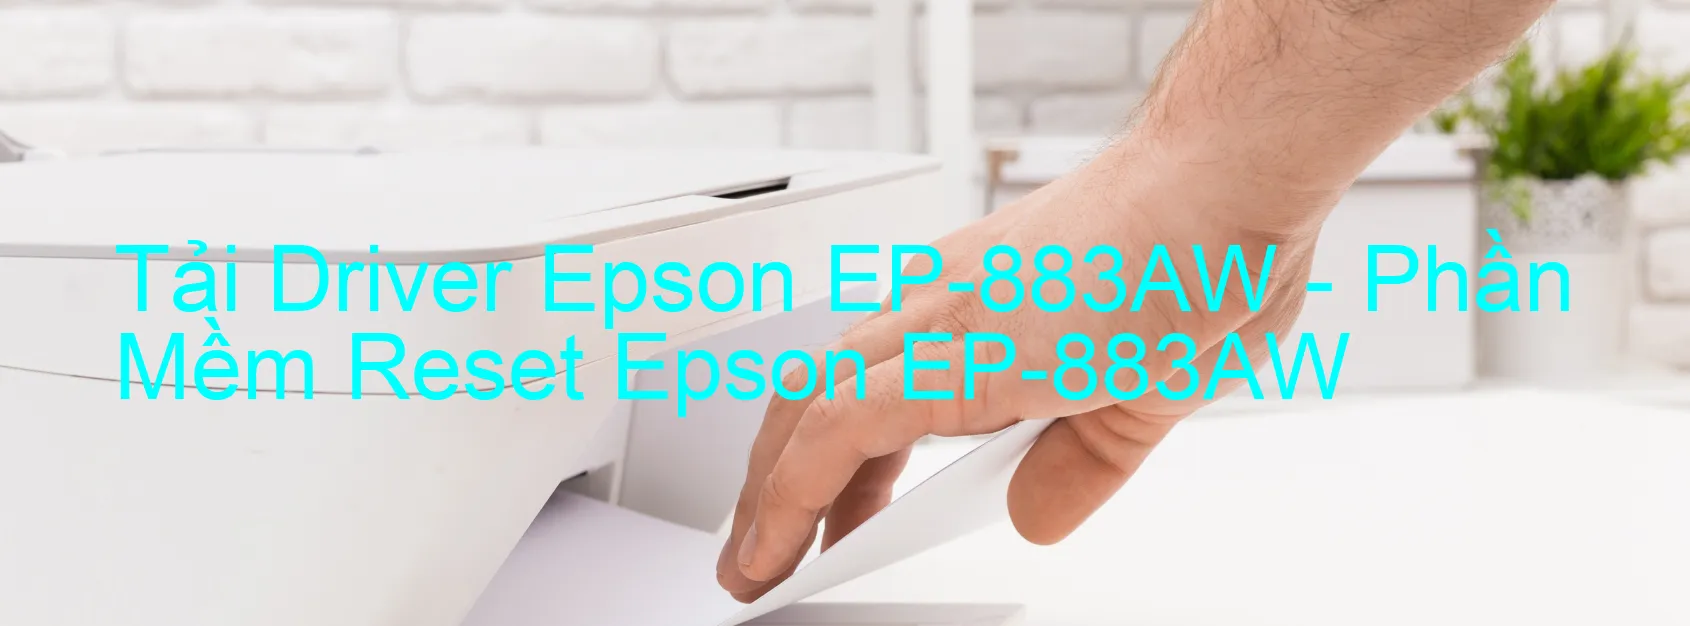 Driver Epson EP-883AW, Phần Mềm Reset Epson EP-883AW